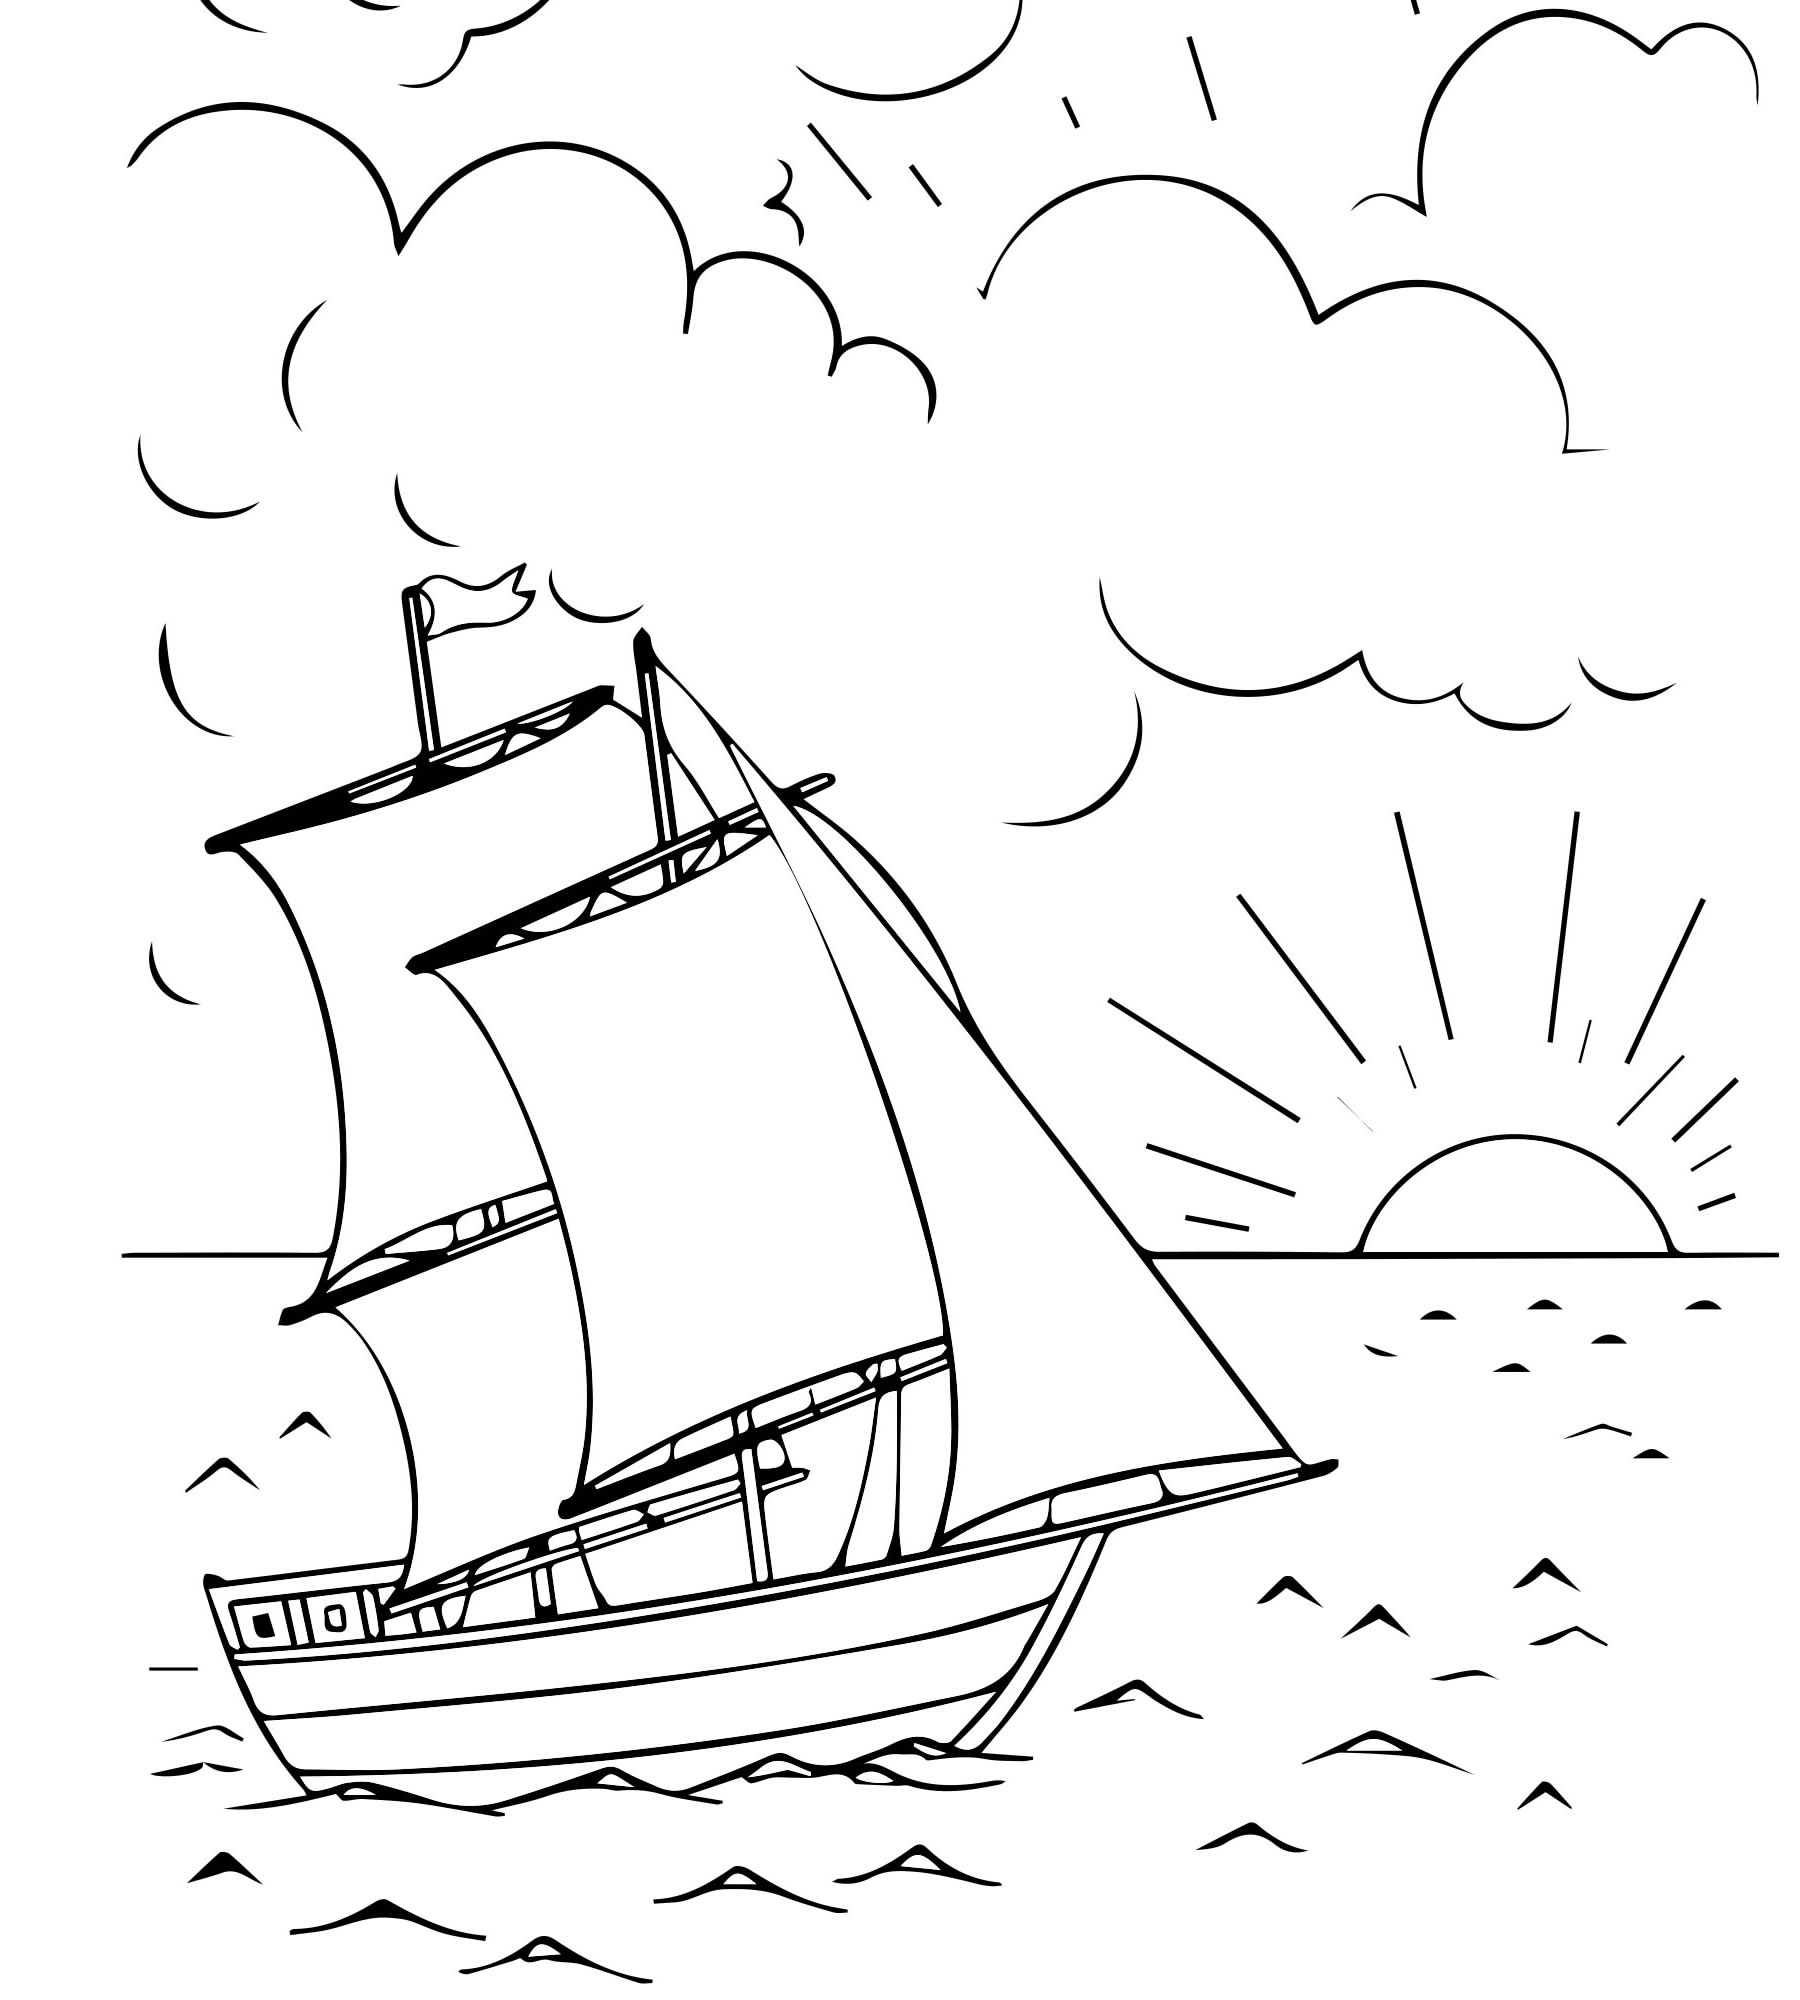 Раскраска Корабль с парусами для мальчиков детей малышей распечатать бесплатно или скачать